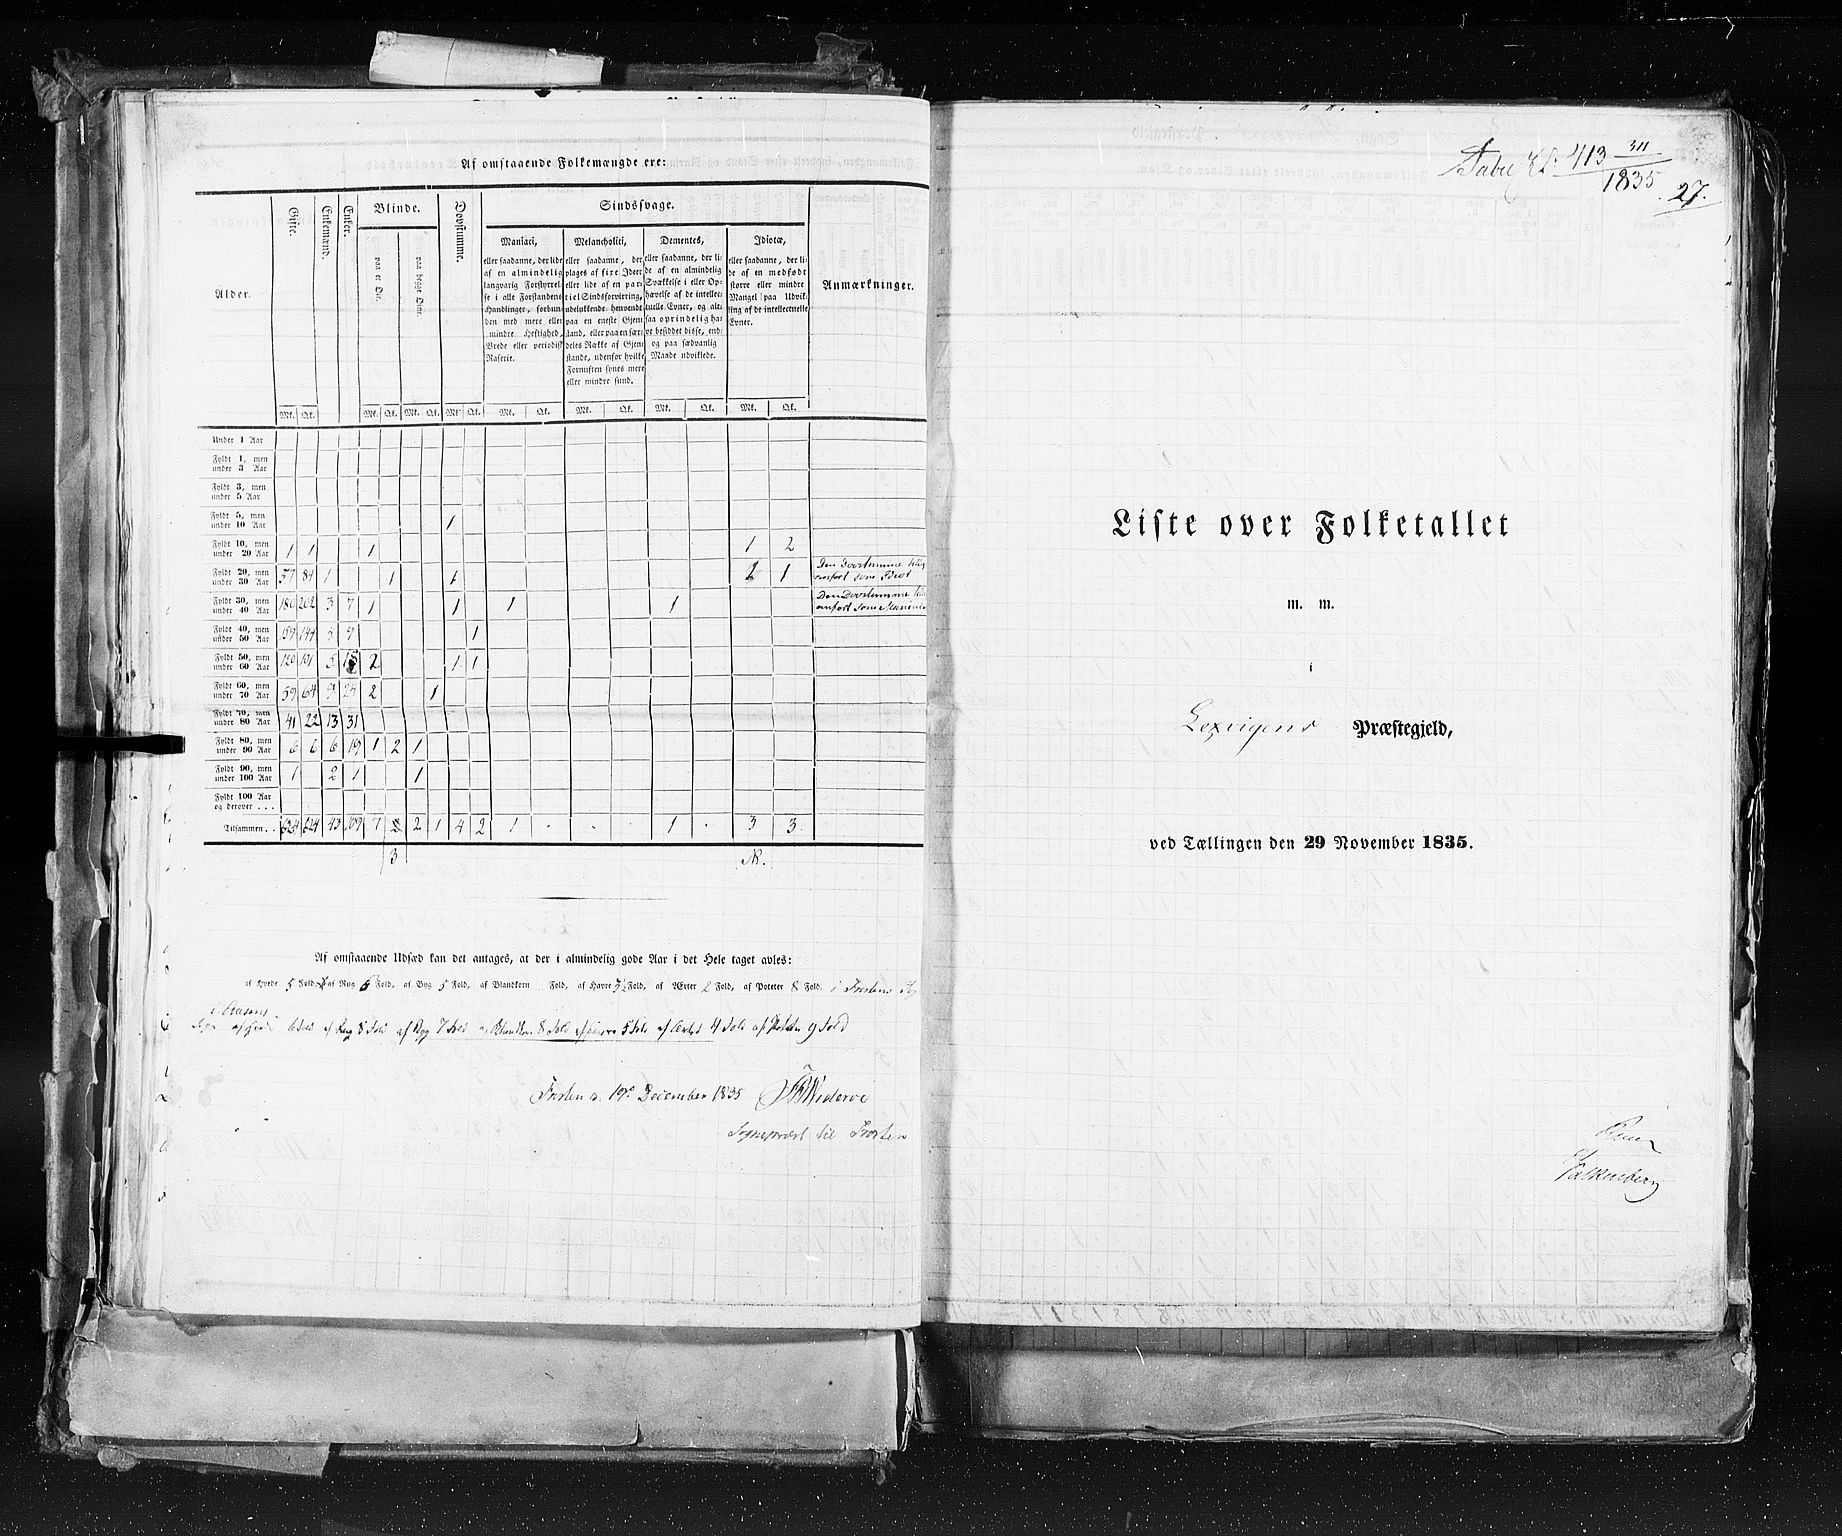 RA, Folketellingen 1835, bind 9: Nordre Trondhjem amt, Nordland amt og Finnmarken amt, 1835, s. 27